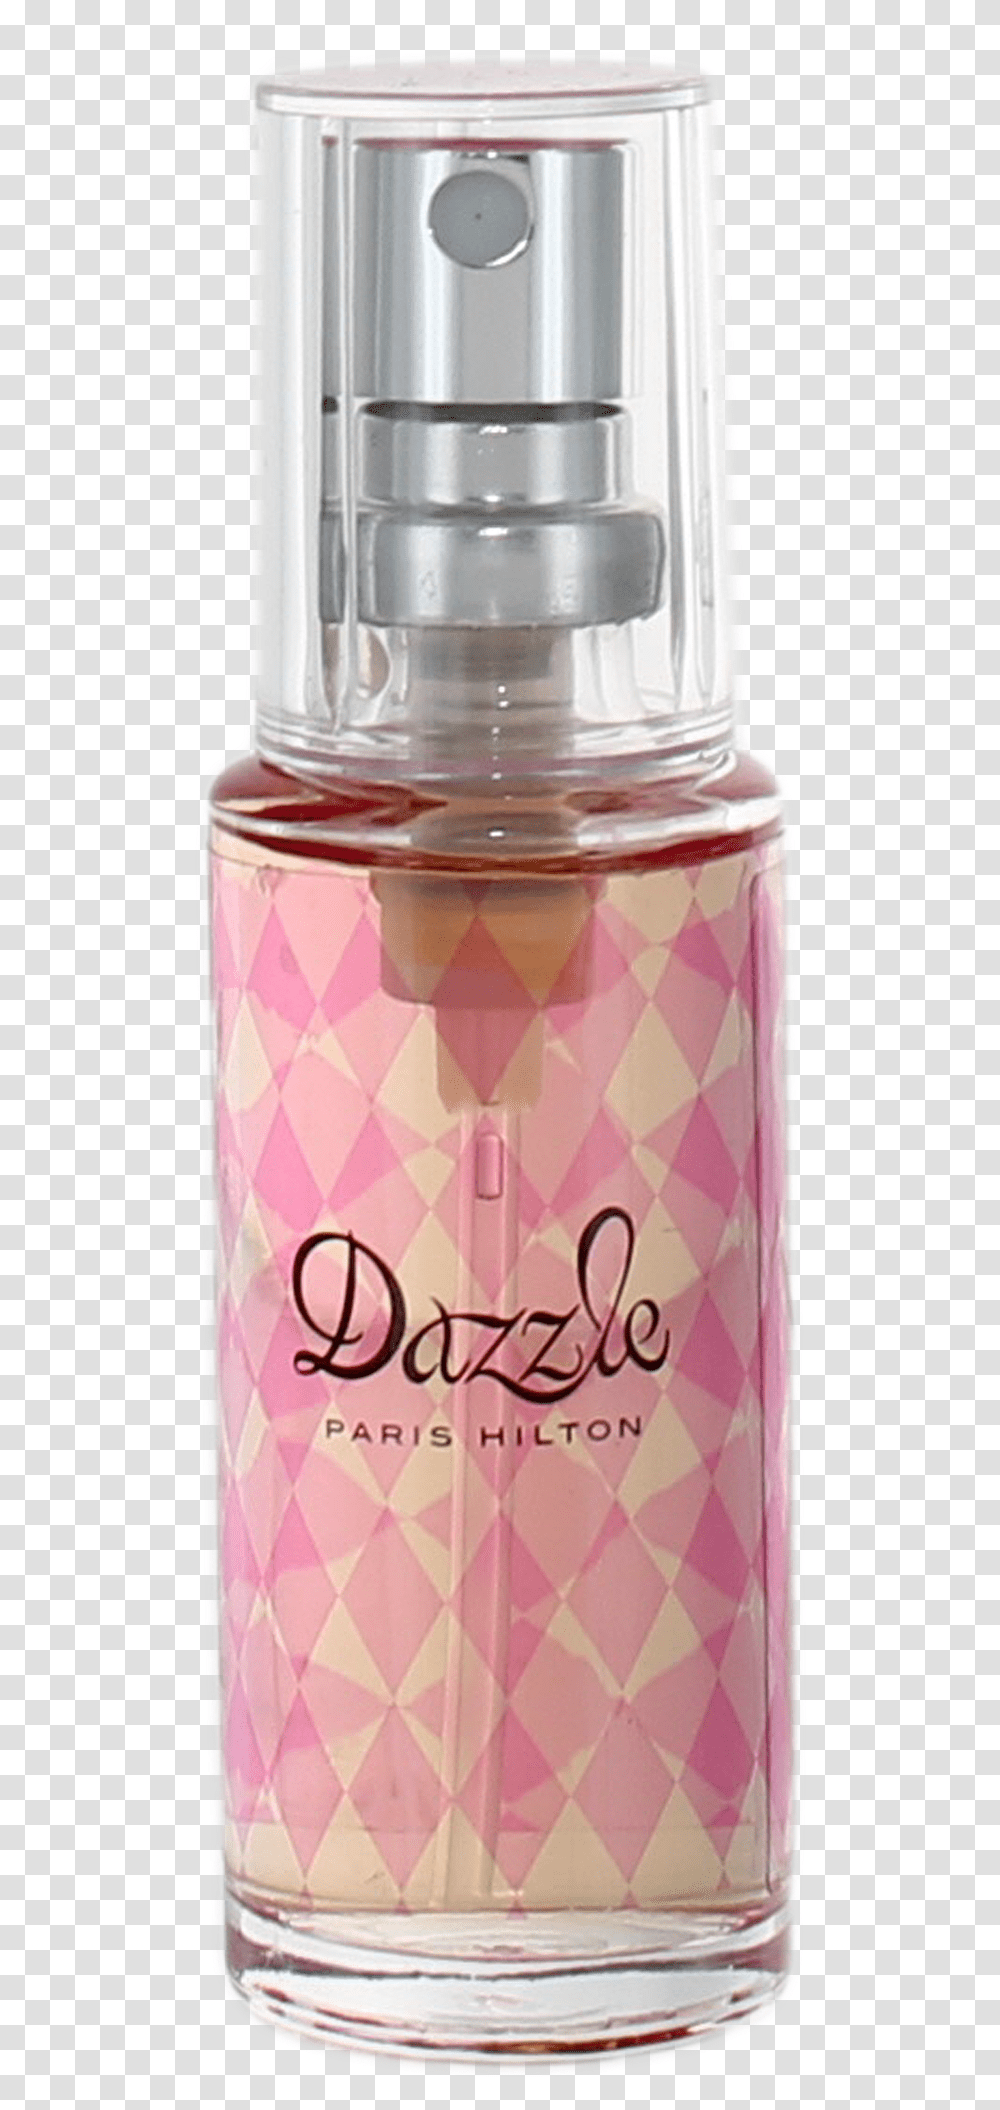 Dazzle By Paris Hilton For Women Miniature Edp Spray Perfume, Cosmetics, Plant, Jar, Bottle Transparent Png